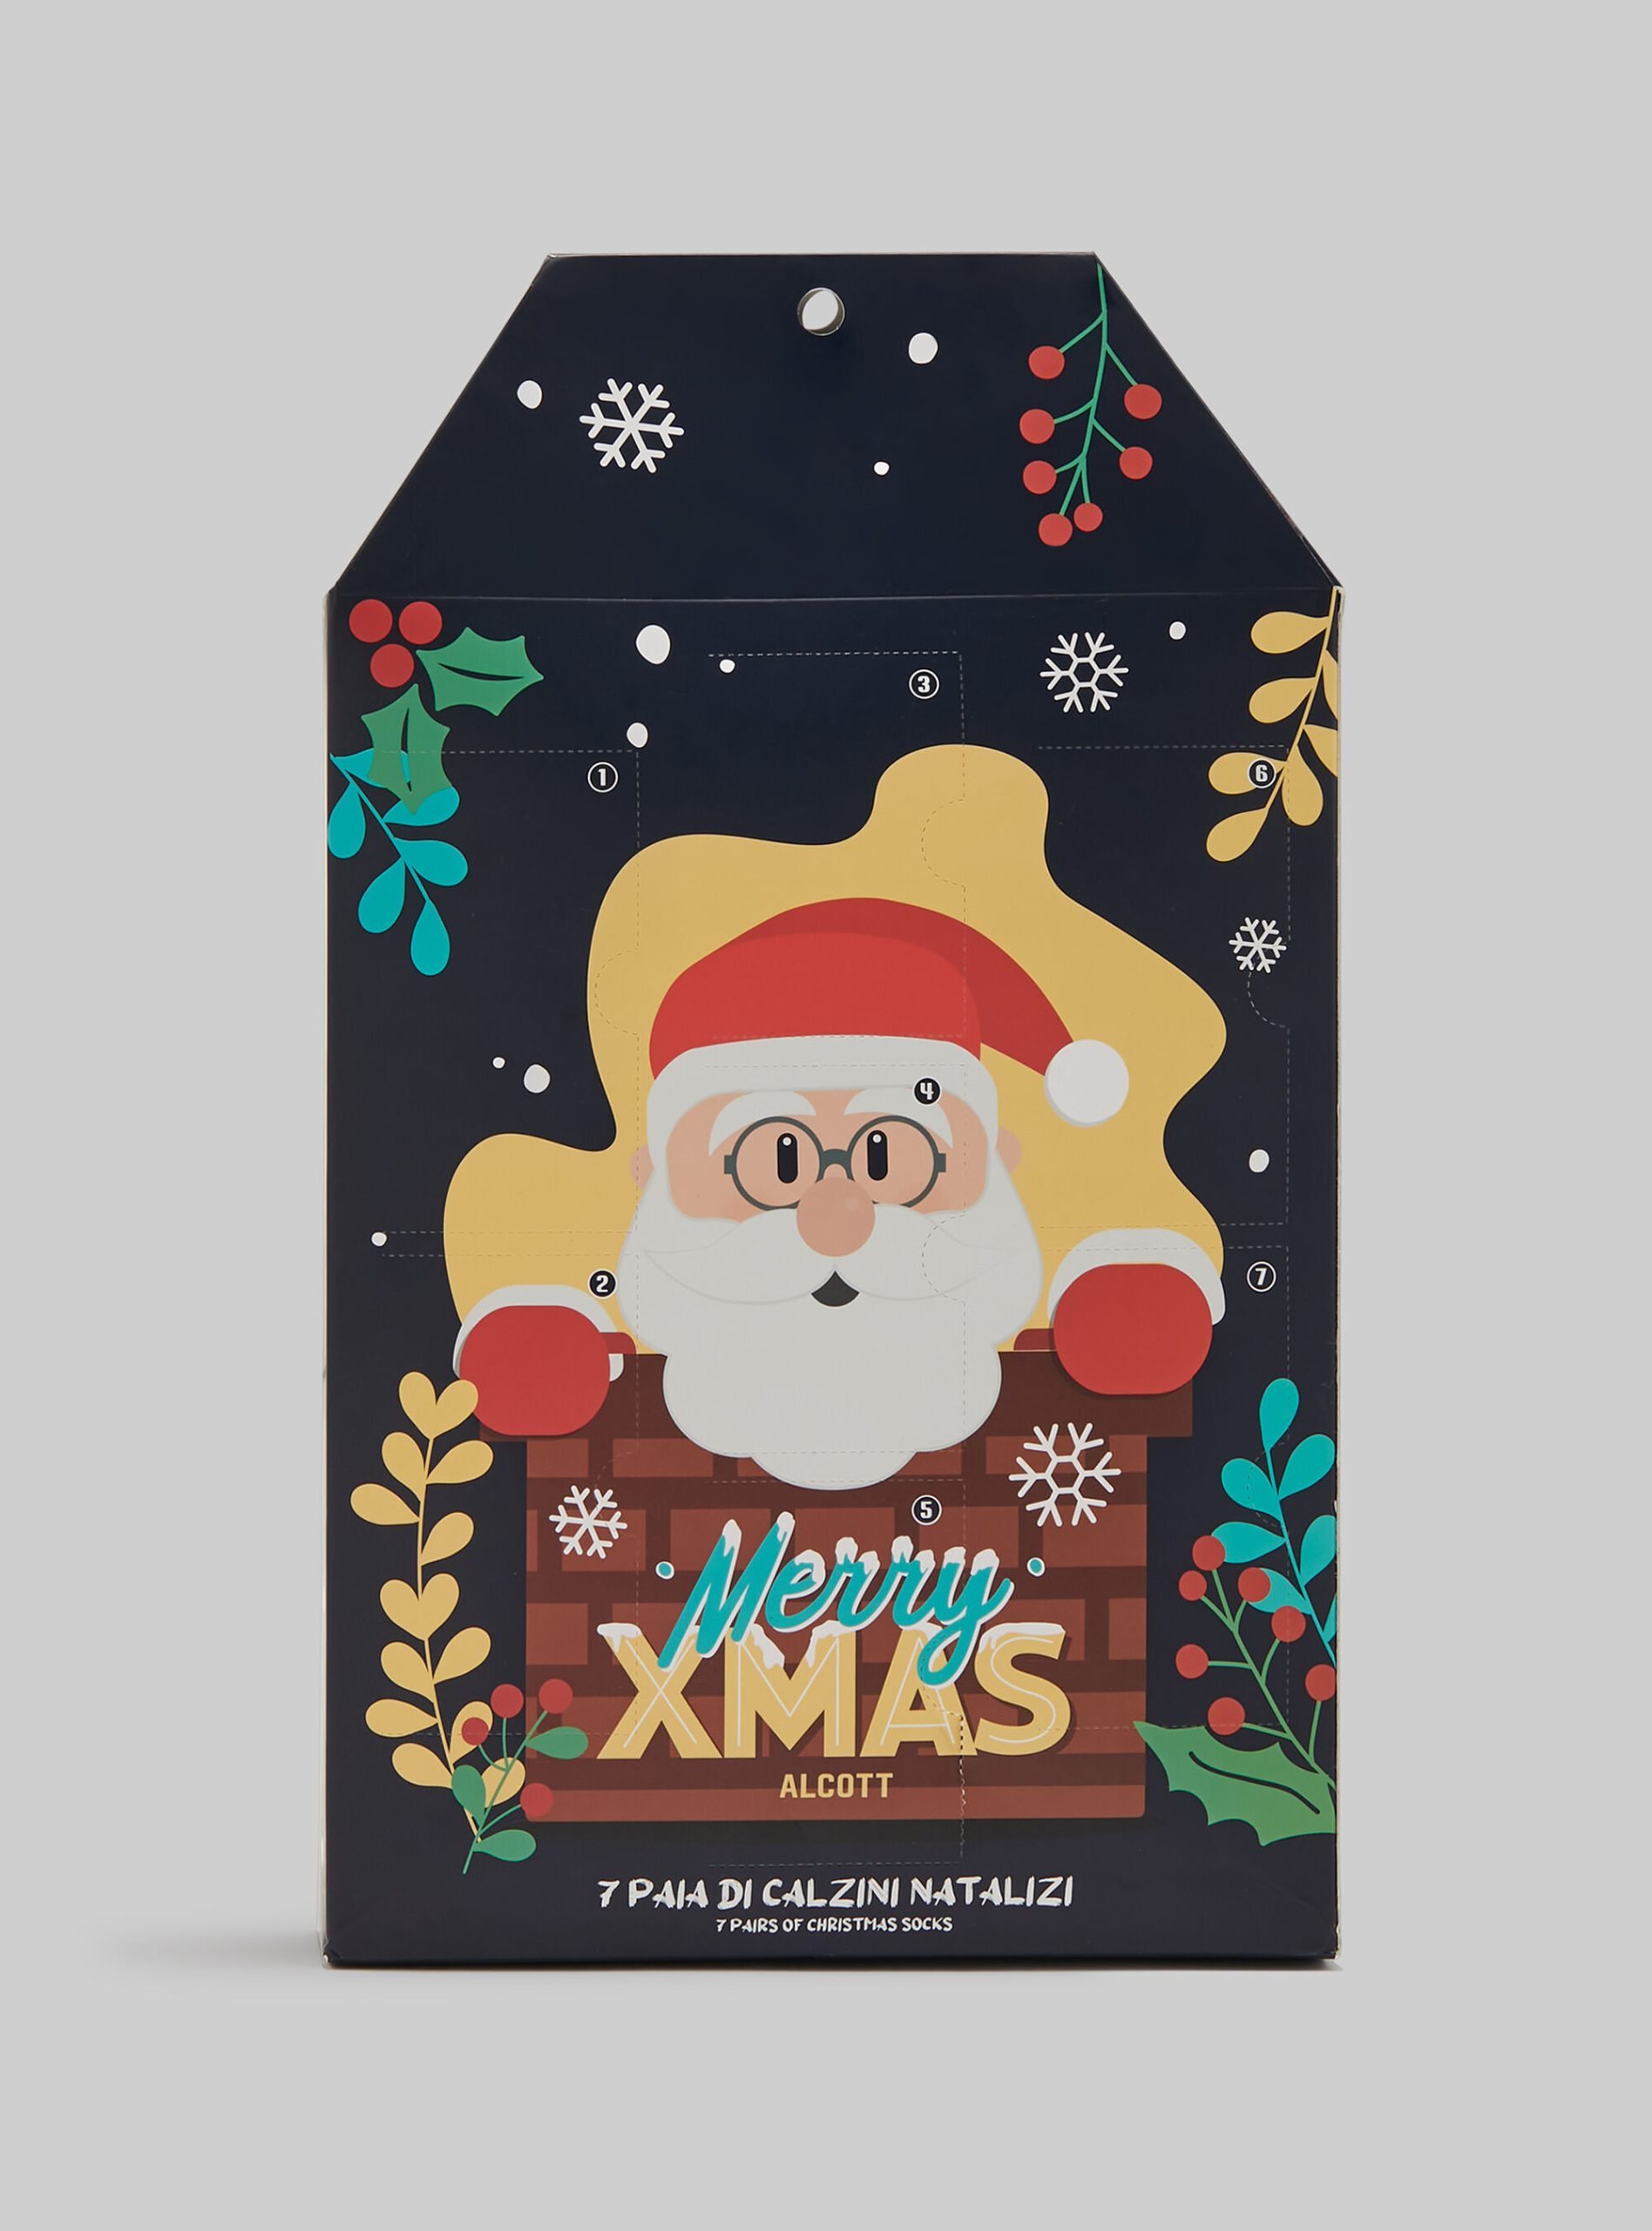 Männer Xmas Alcott Socken Christmas Box Set Of 7 Pairs Of Socks Exklusiv – 2